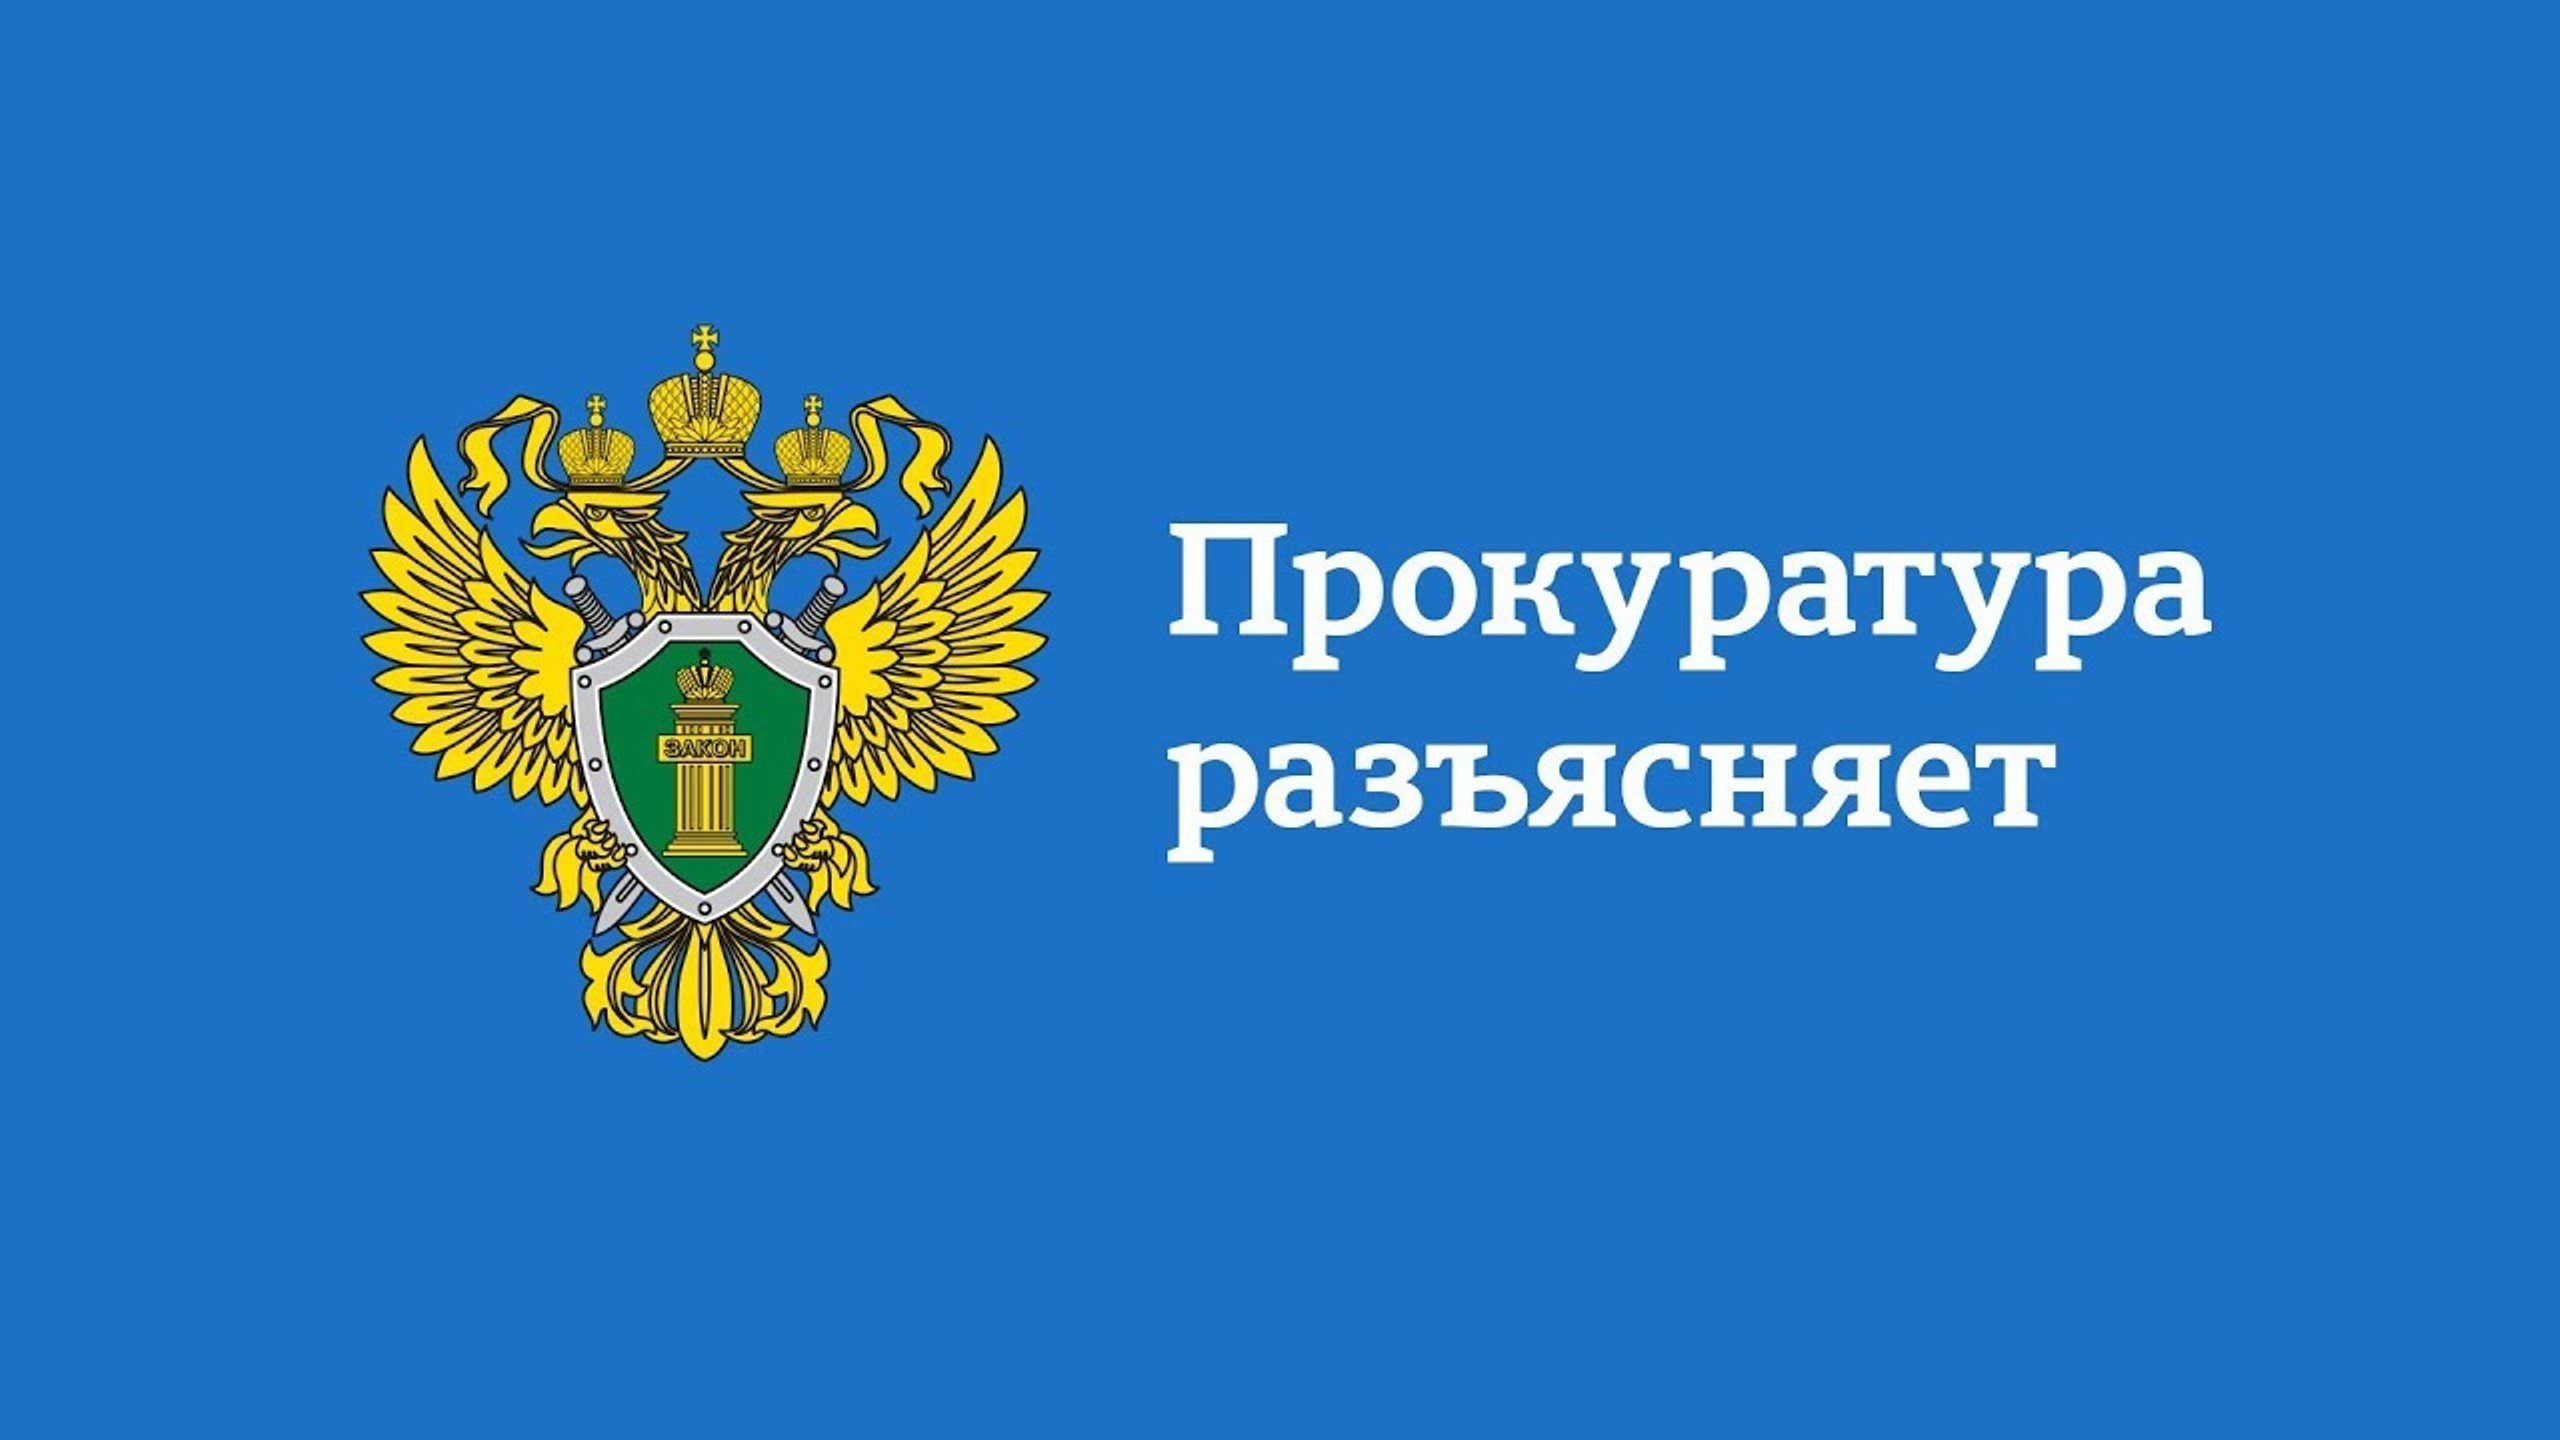 Изменения, внесенные в Жилищный кодекс Российской Федерации.